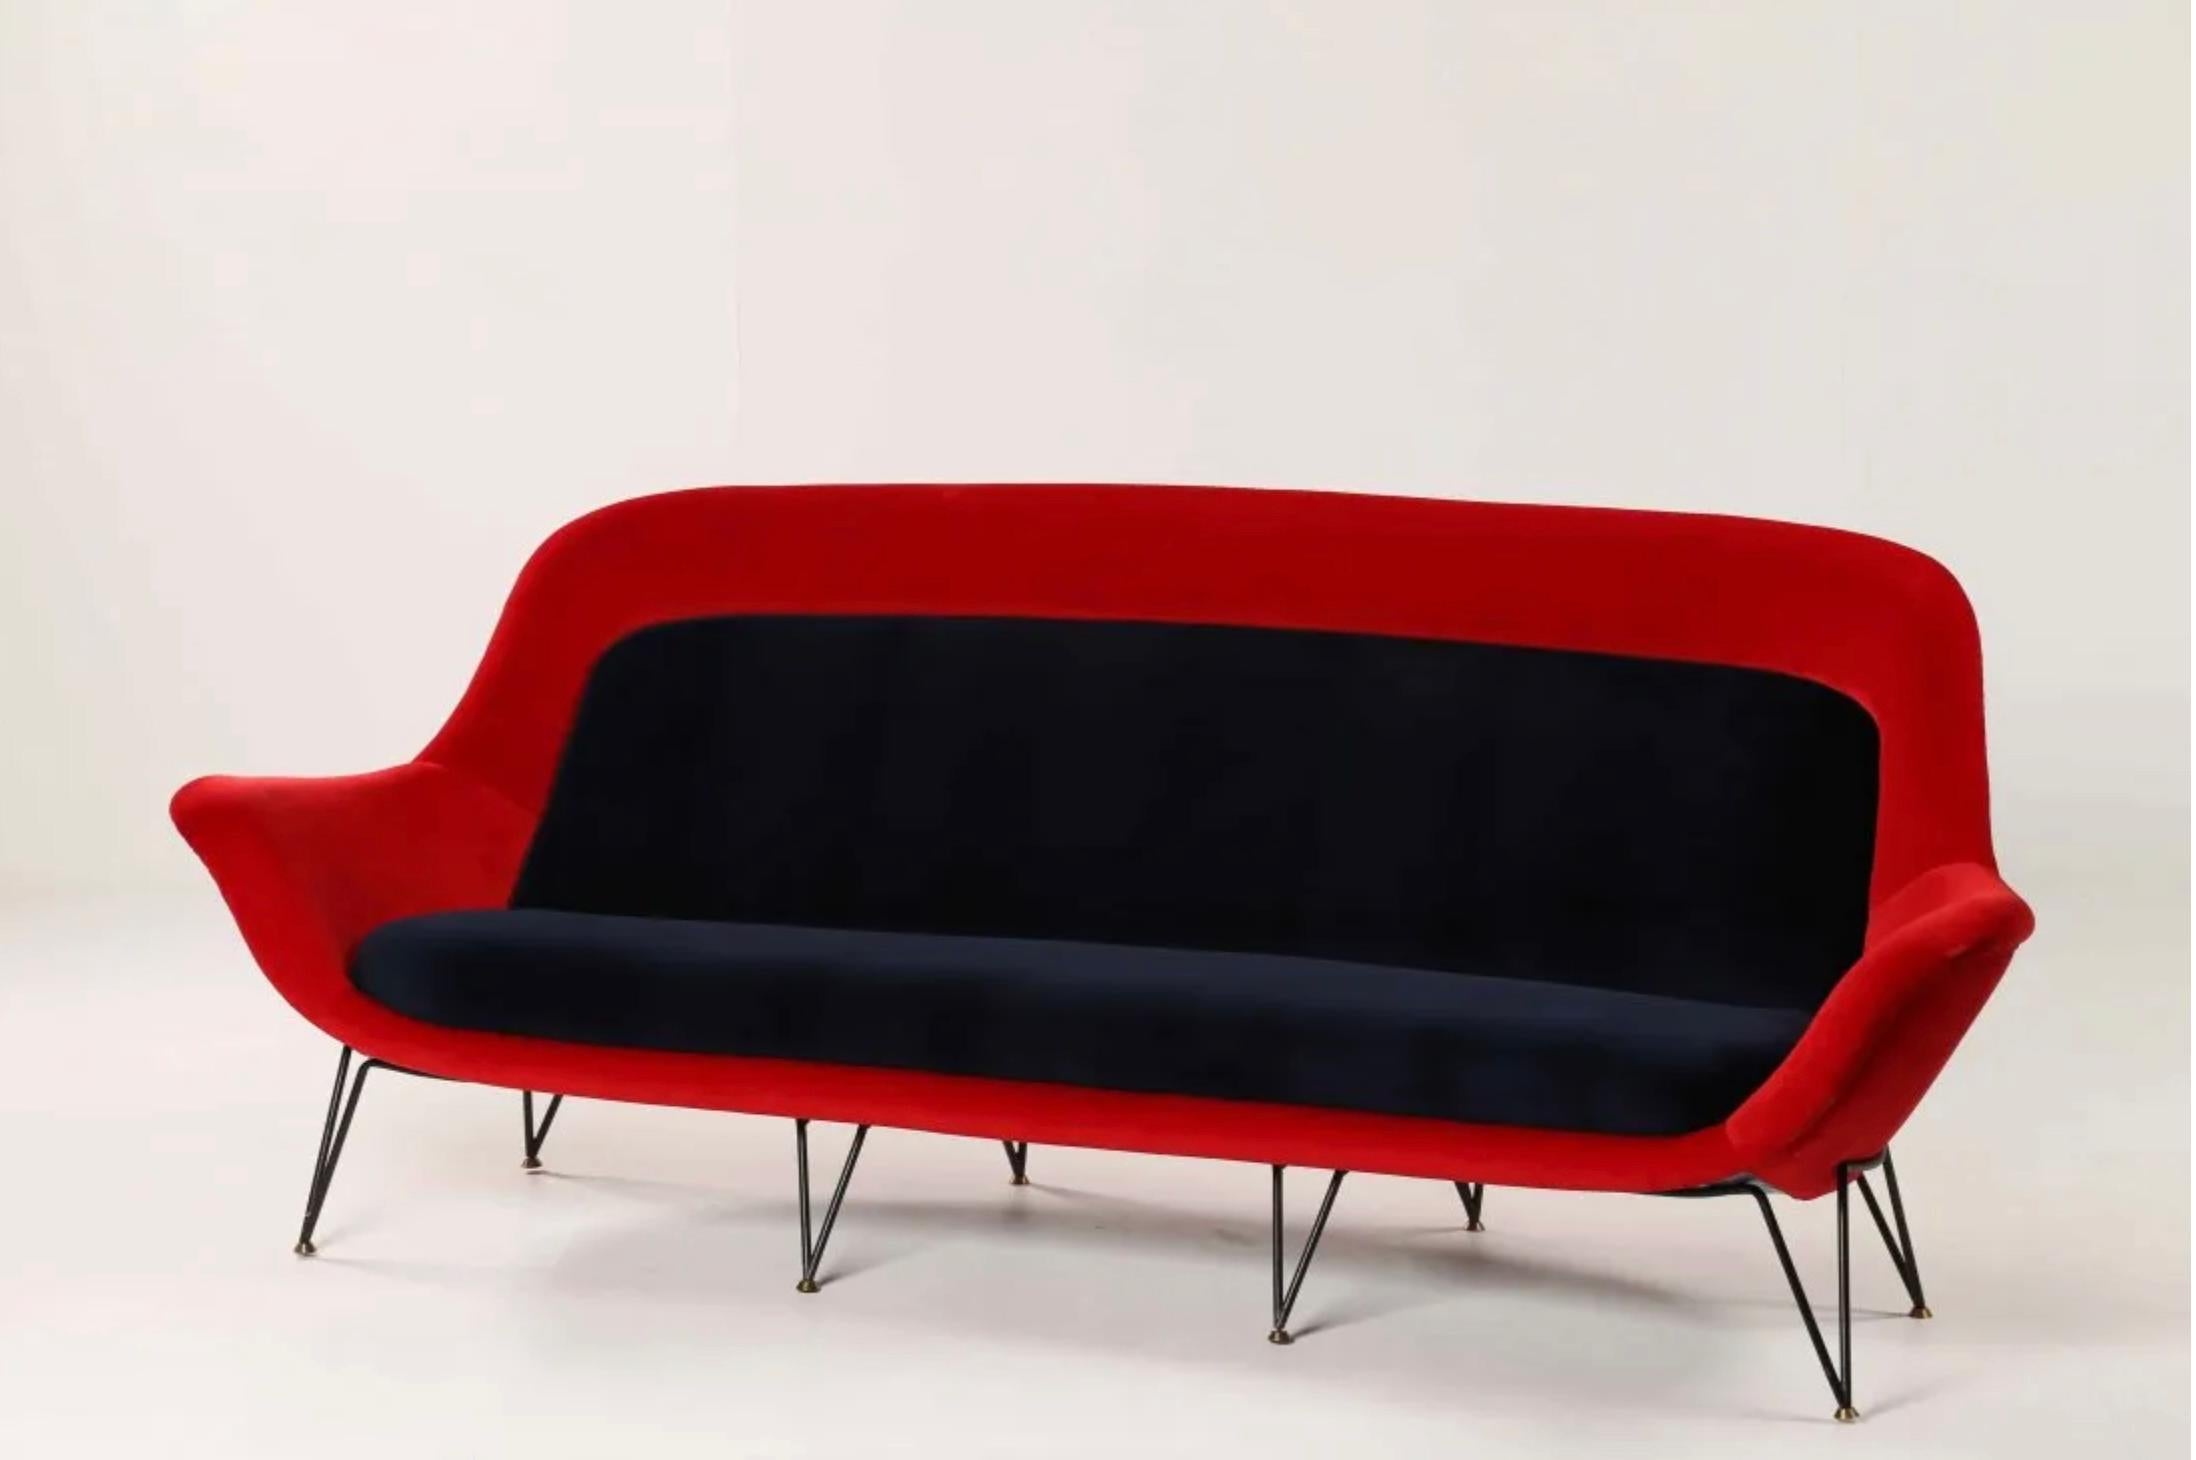 Sehr seltenes Sofa, hergestellt von Lenzi in Italien in den späten 50er Jahren. Organische Form sehr komfortabel mit einem abgerundeten Rücken. Zweifarbiger roter und blauer Original-Samt auf geschwärztem Metallsockel mit Messingakzenten.
Ein Paar